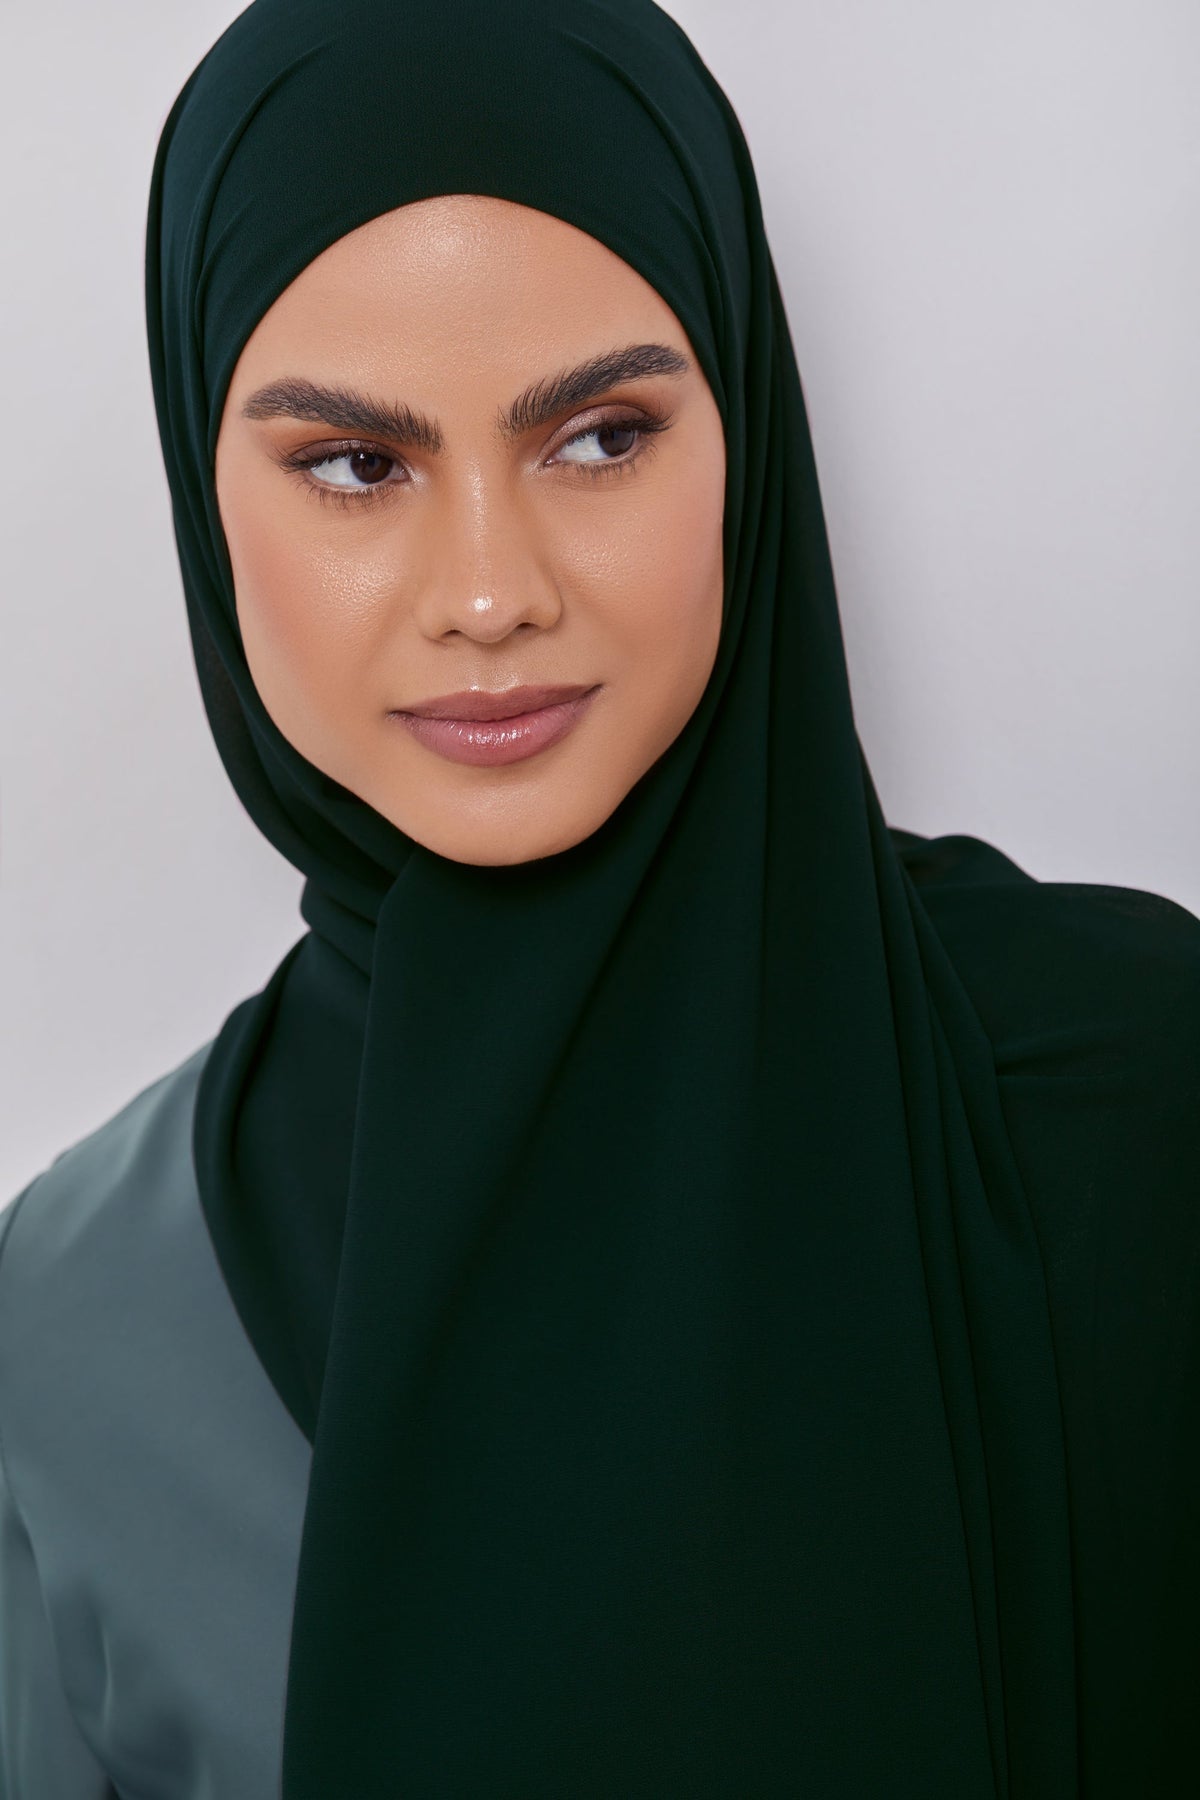 Essential Chiffon Hijab - Barely Beige